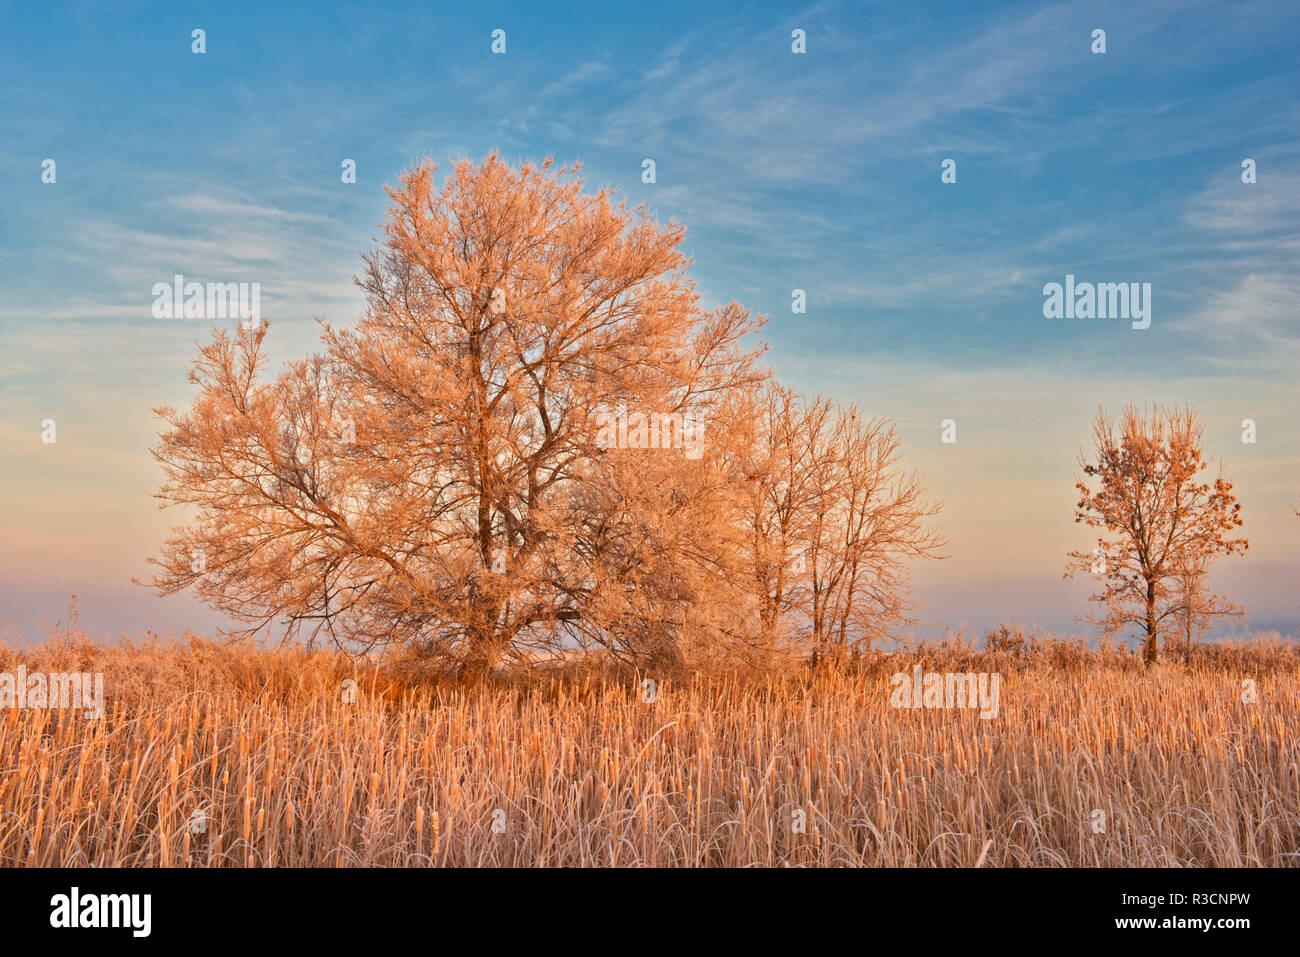 Canada, Manitoba, Lorette. Trees and grassy field in winter. Stock Photo